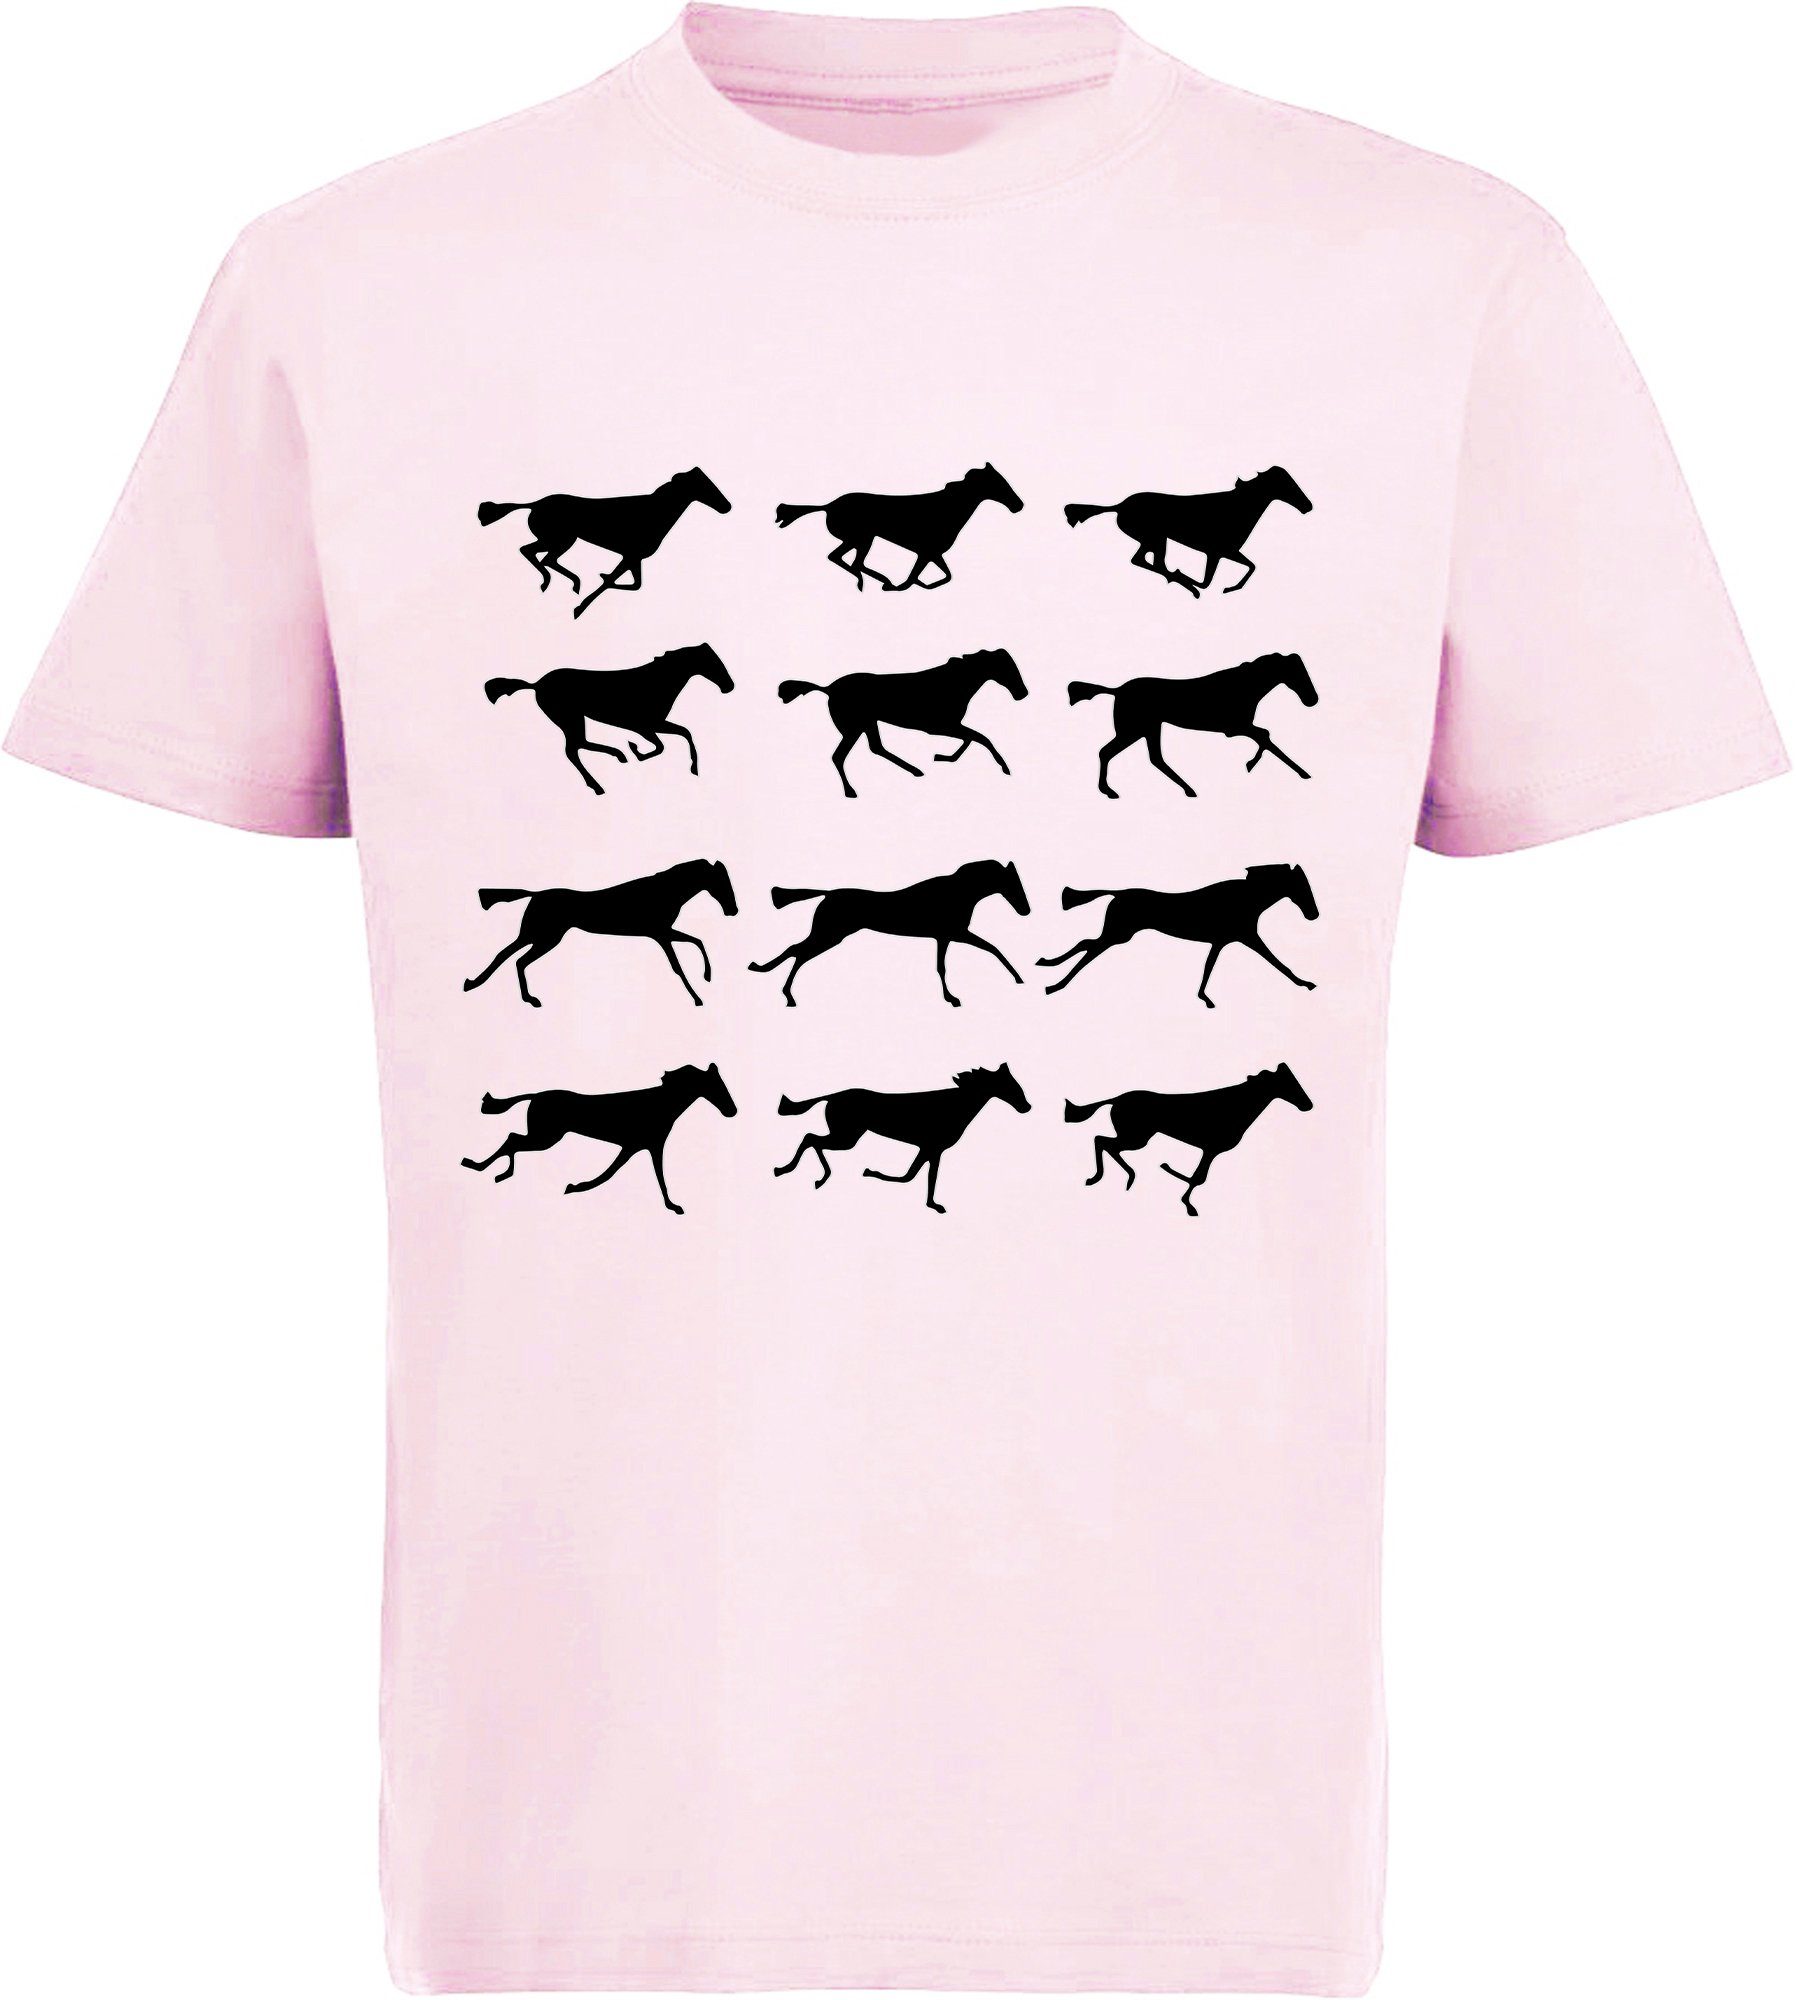 MyDesign24 Print-Shirt bedrucktes Mädchen T-Shirt - Silhouetten von Pferden Baumwollshirt mit Aufdruck, i173 rosa